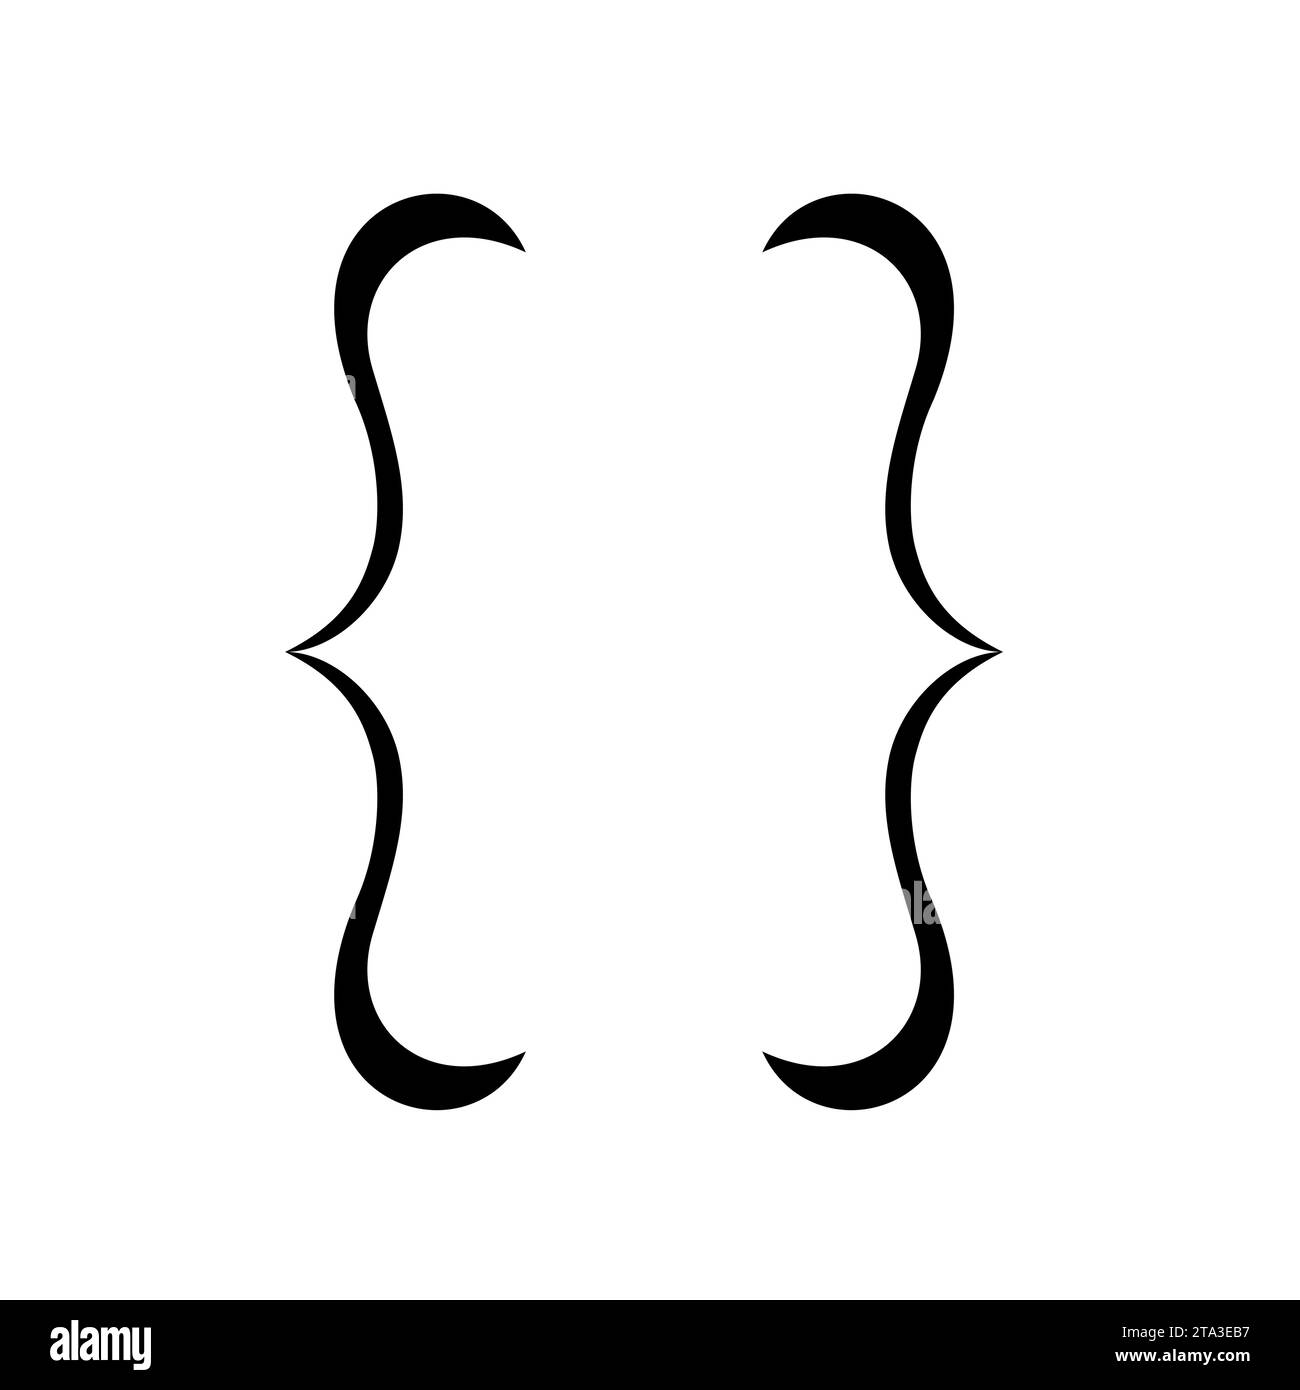 Vetor de Curly braces, double symmetric brackets. Vector